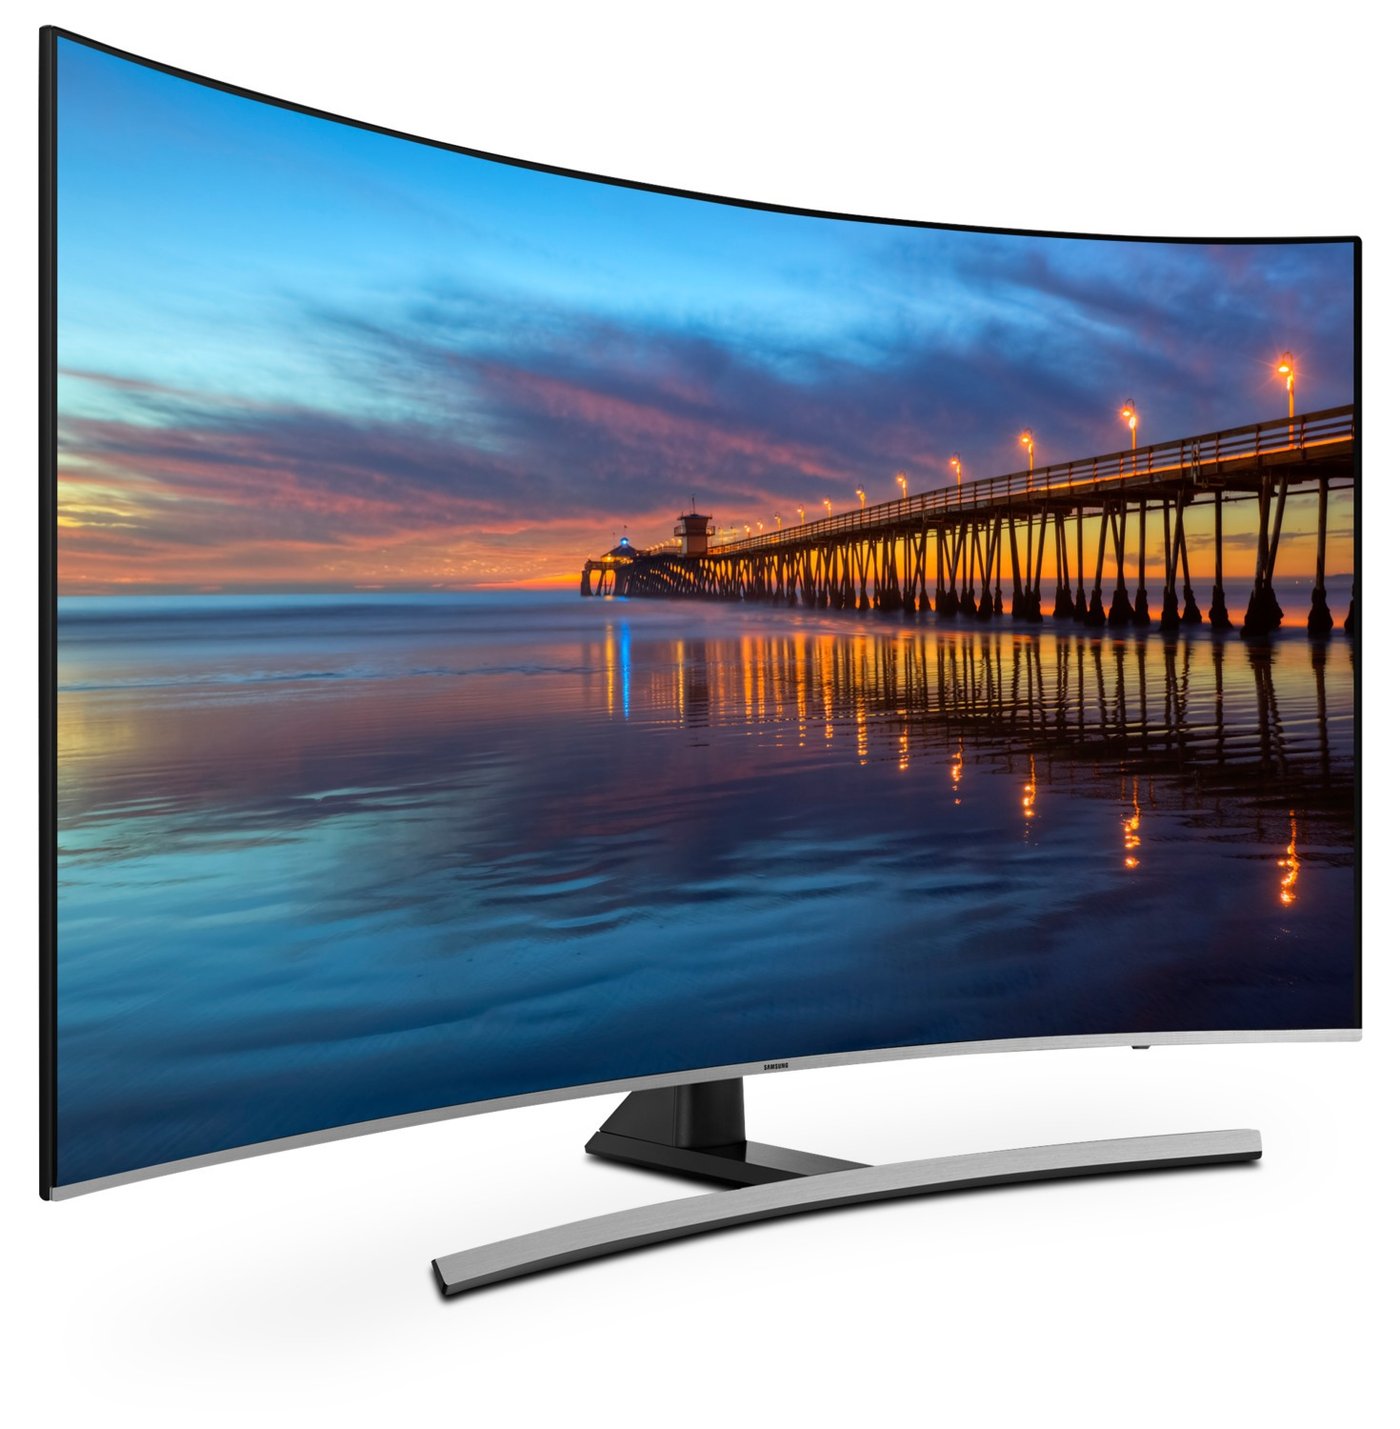 Найден новый телевизор. Samsung 55ku6670. Samsung led 55. Телевизор самсунг (цена и функции). ТВ самсунг 138.